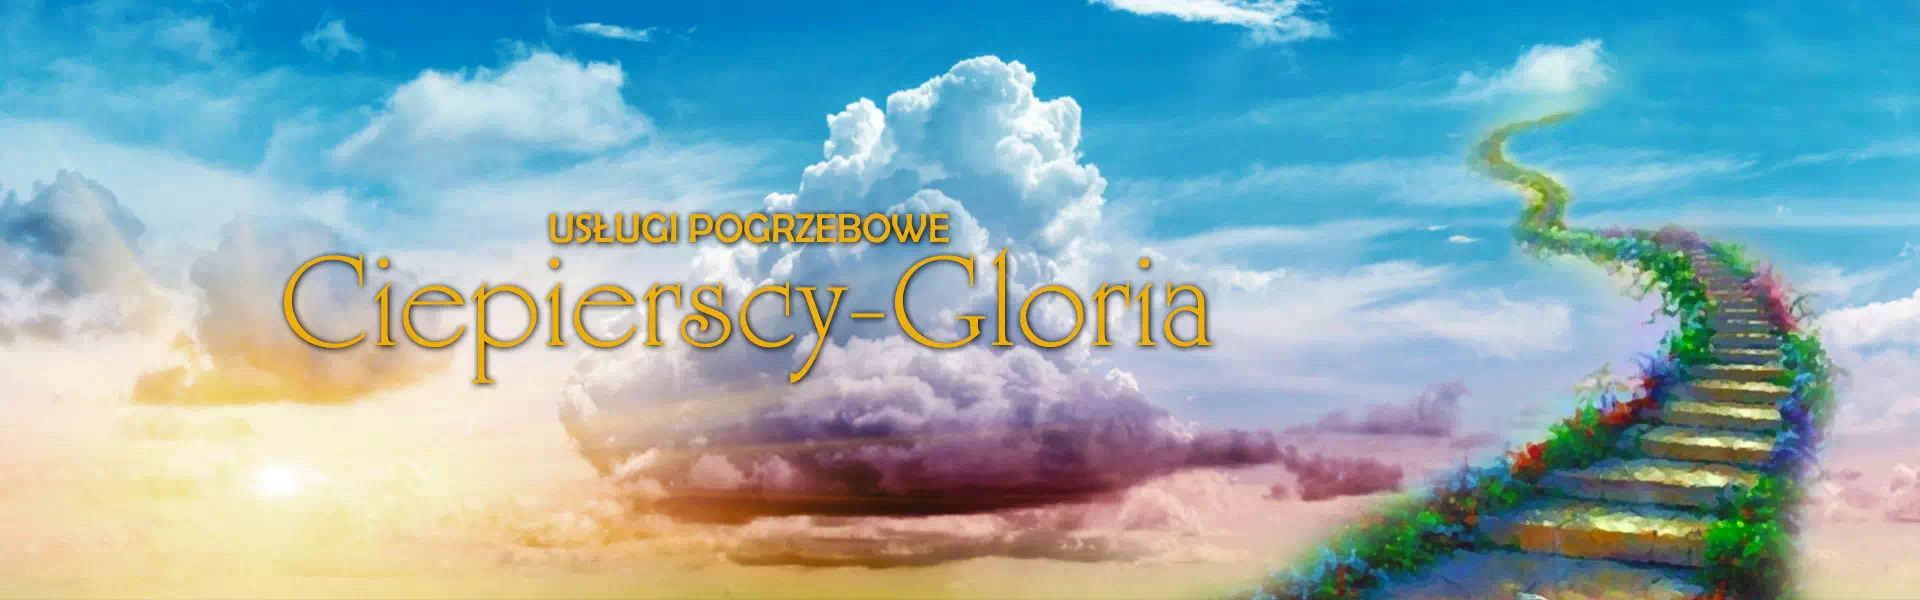 Ciepierscy-Gloria ze schodami do nieba w tle